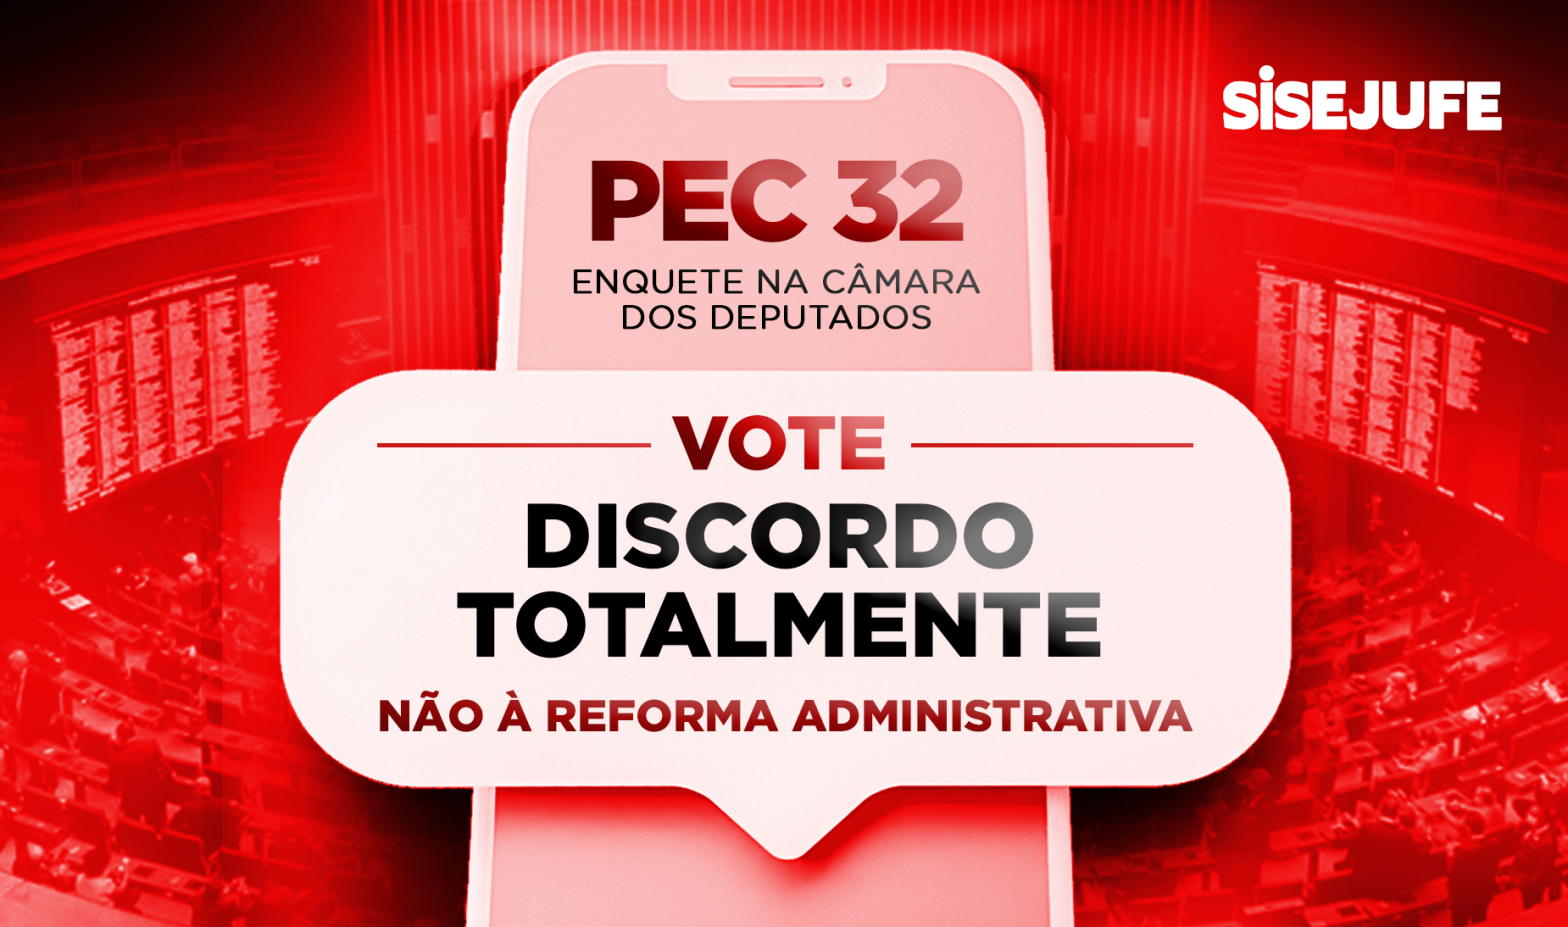 Participe da enquete da Câmara e mostre que você é contra a Reforma Administrativa de Bolsonaro, SISEJUFE